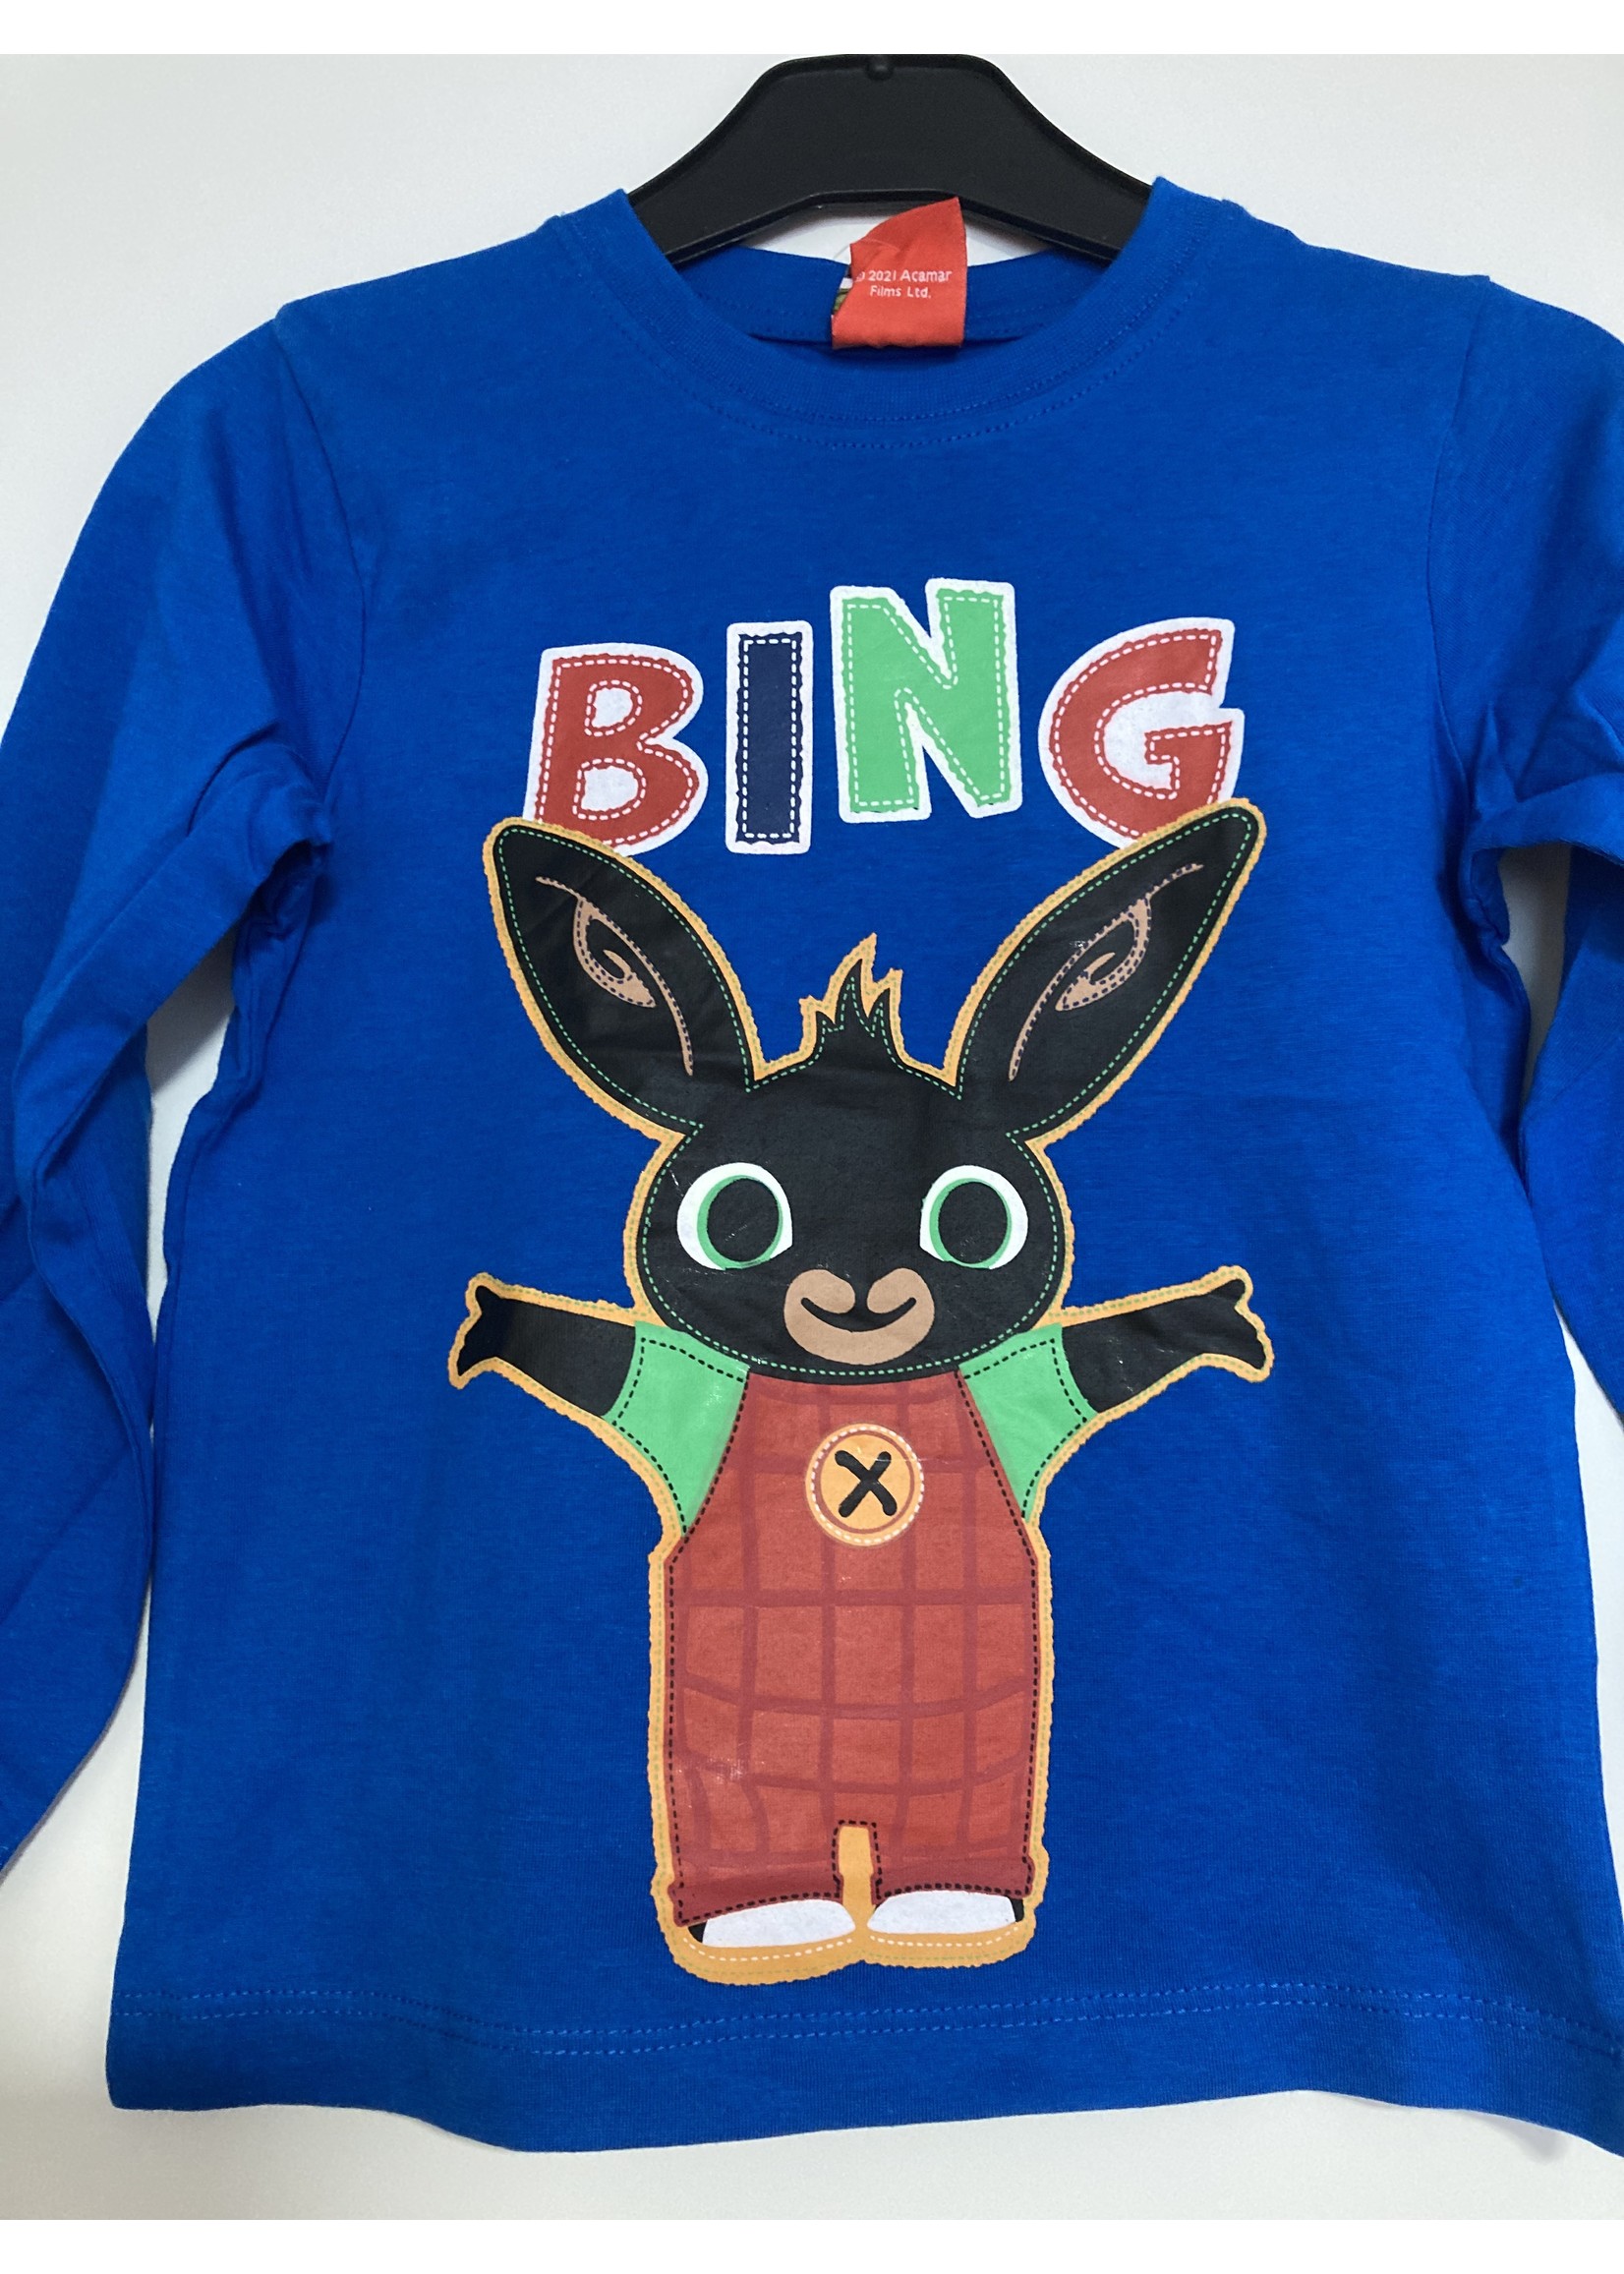 Bing Bunny Bing long sleeve from Bing blue